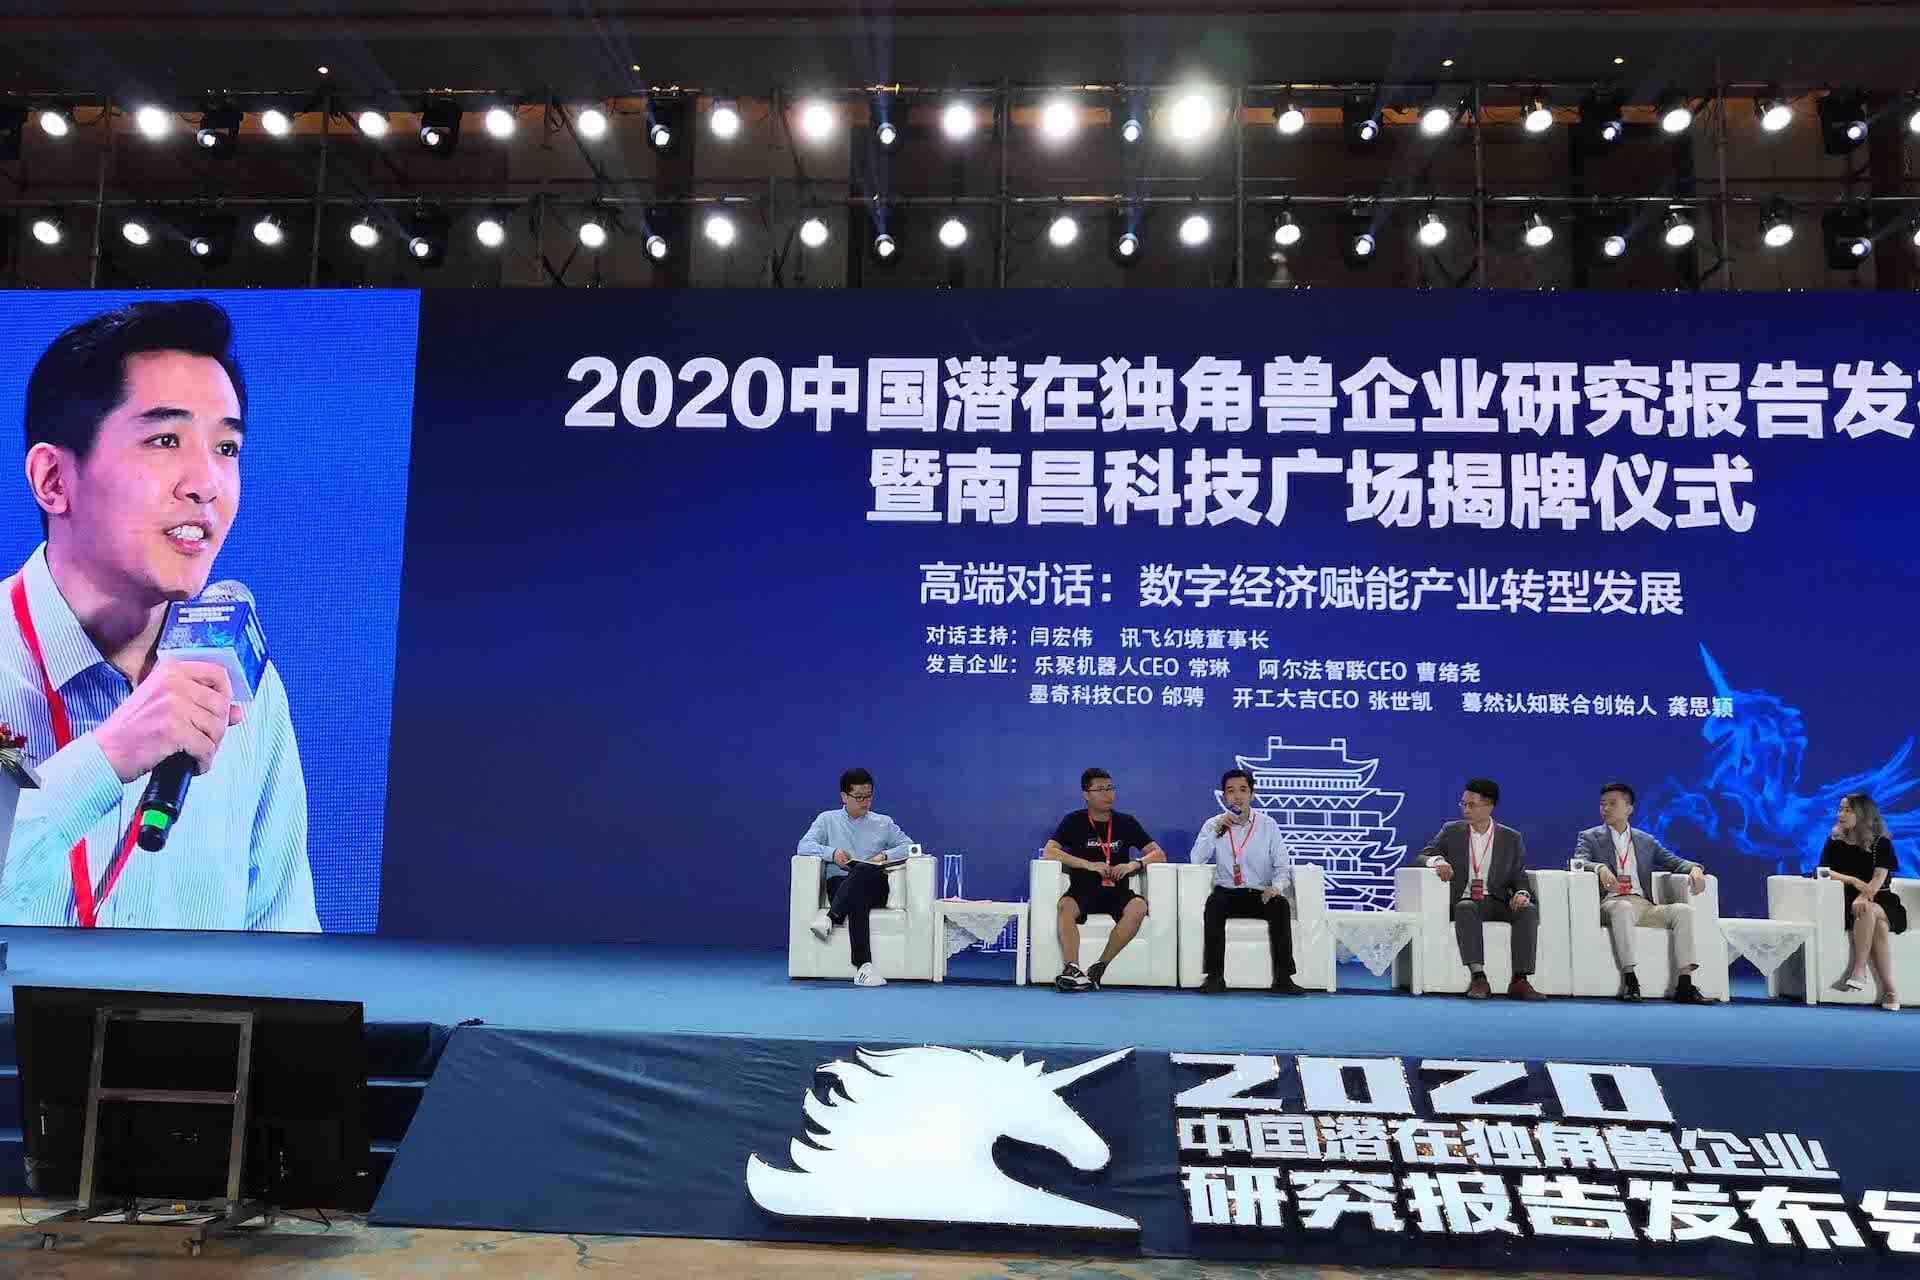 墨奇科技登上2020中国潜在独角兽企业榜单